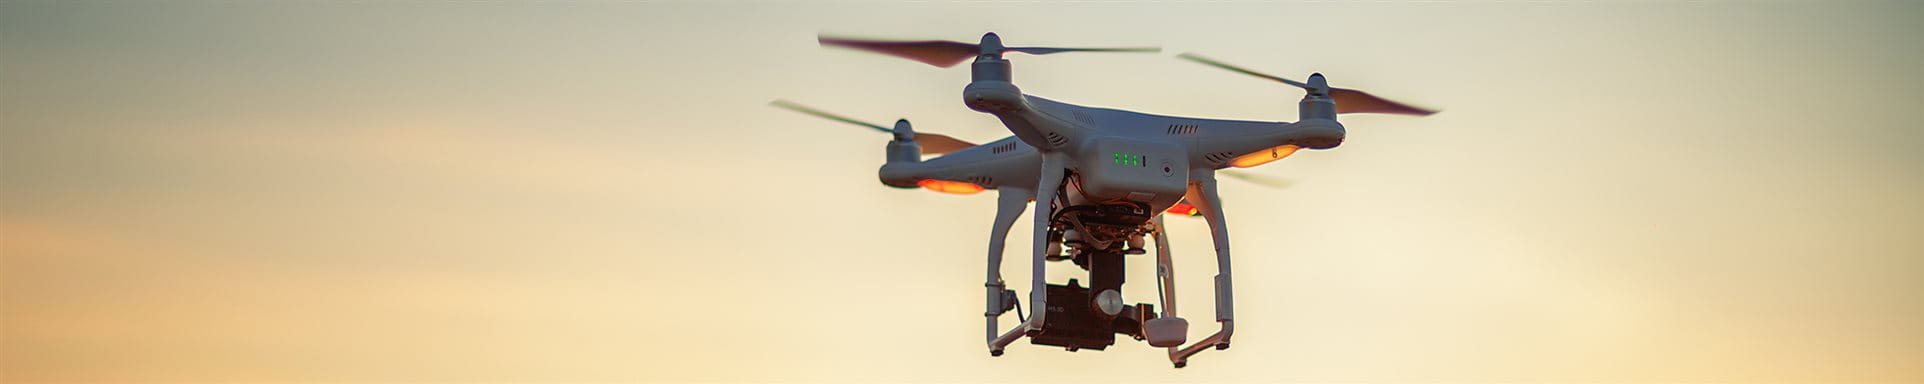  Le drone vole dans les airs